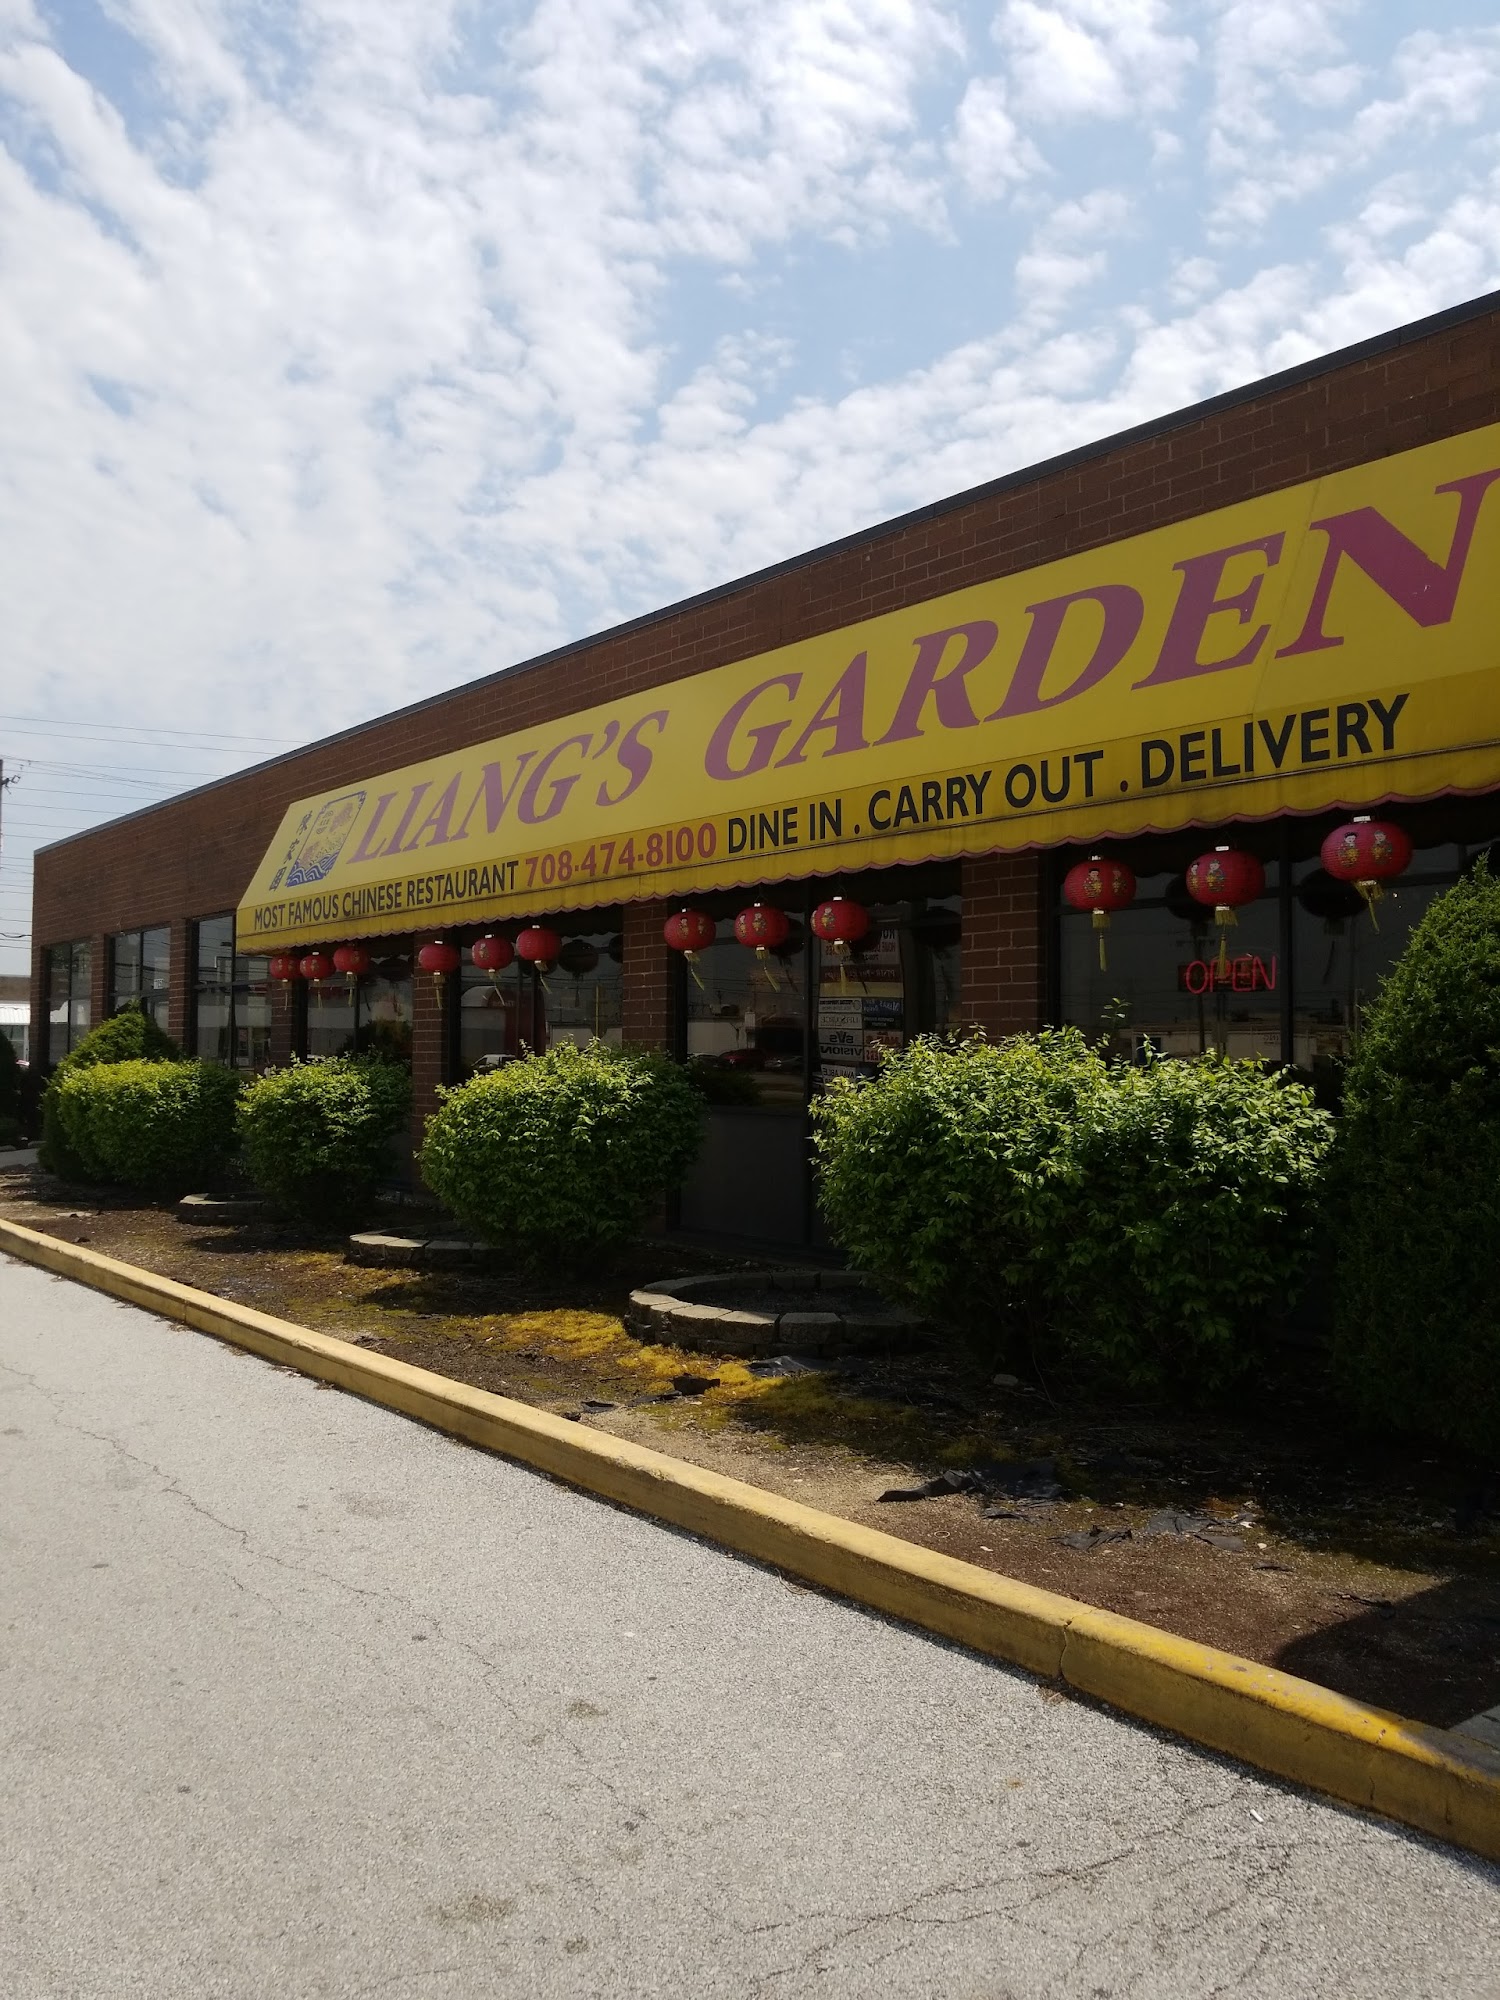 Liang's Garden Restaurant of Lansing, Illinois